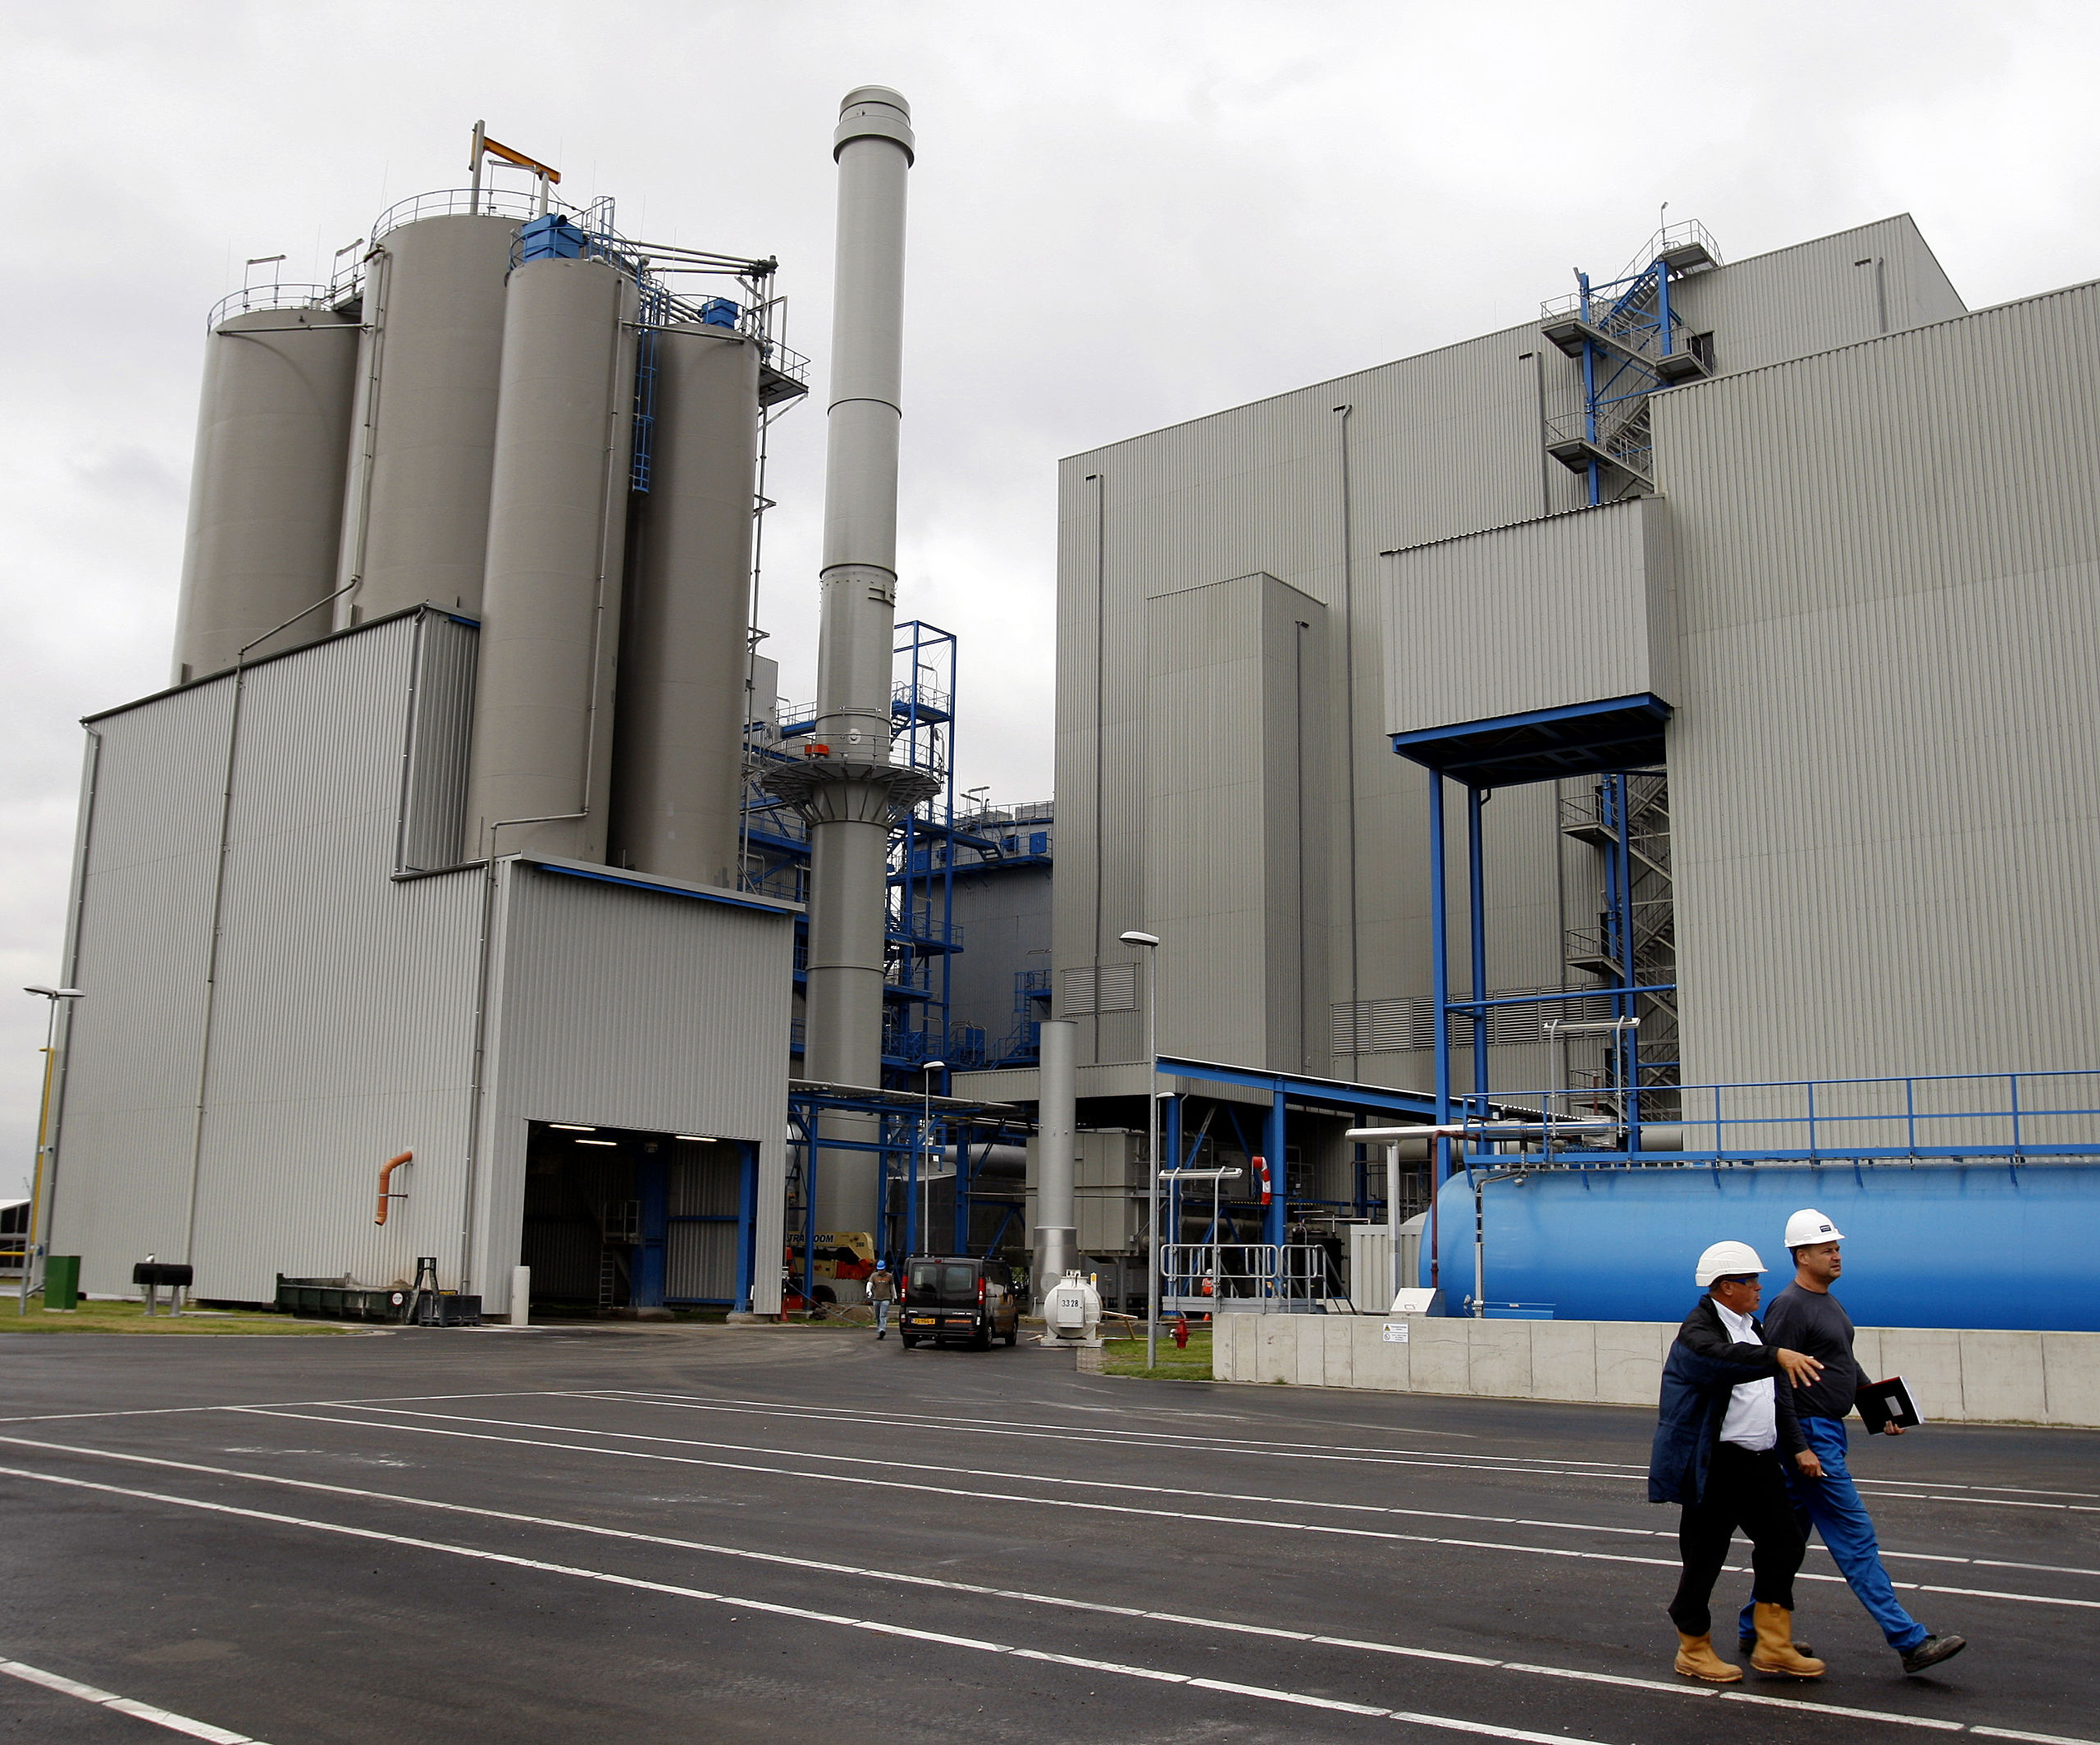 2008: De biomassacentrale in Moerdijk, de eerste op het Europese vasteland